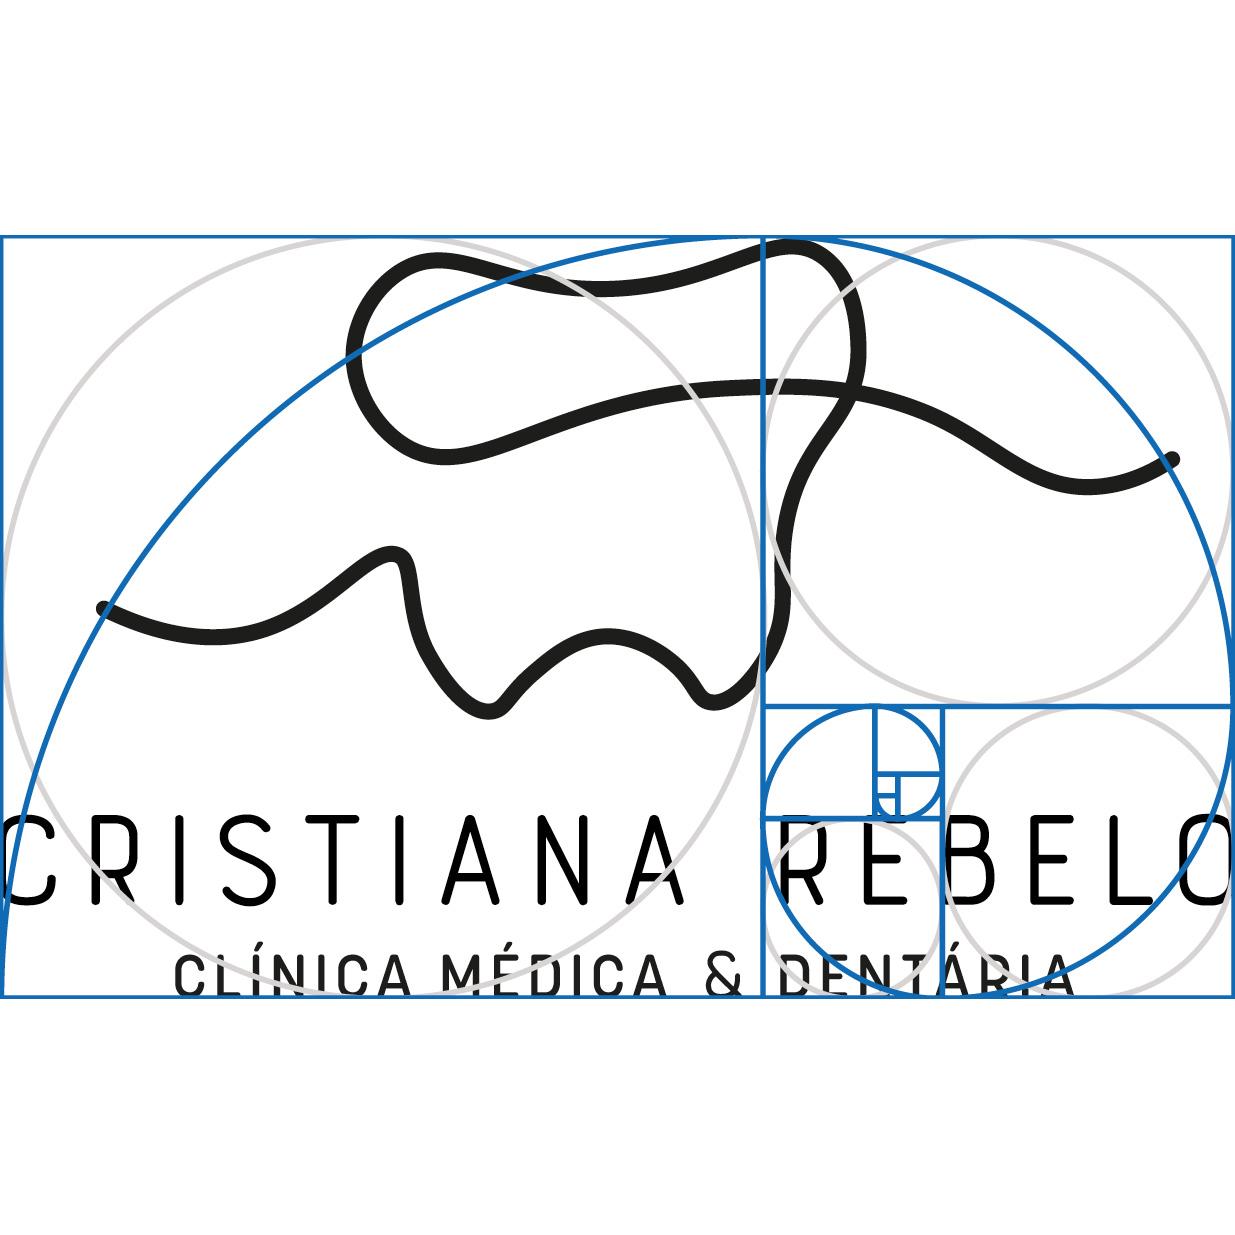 cristiana rebelo dentista logo2